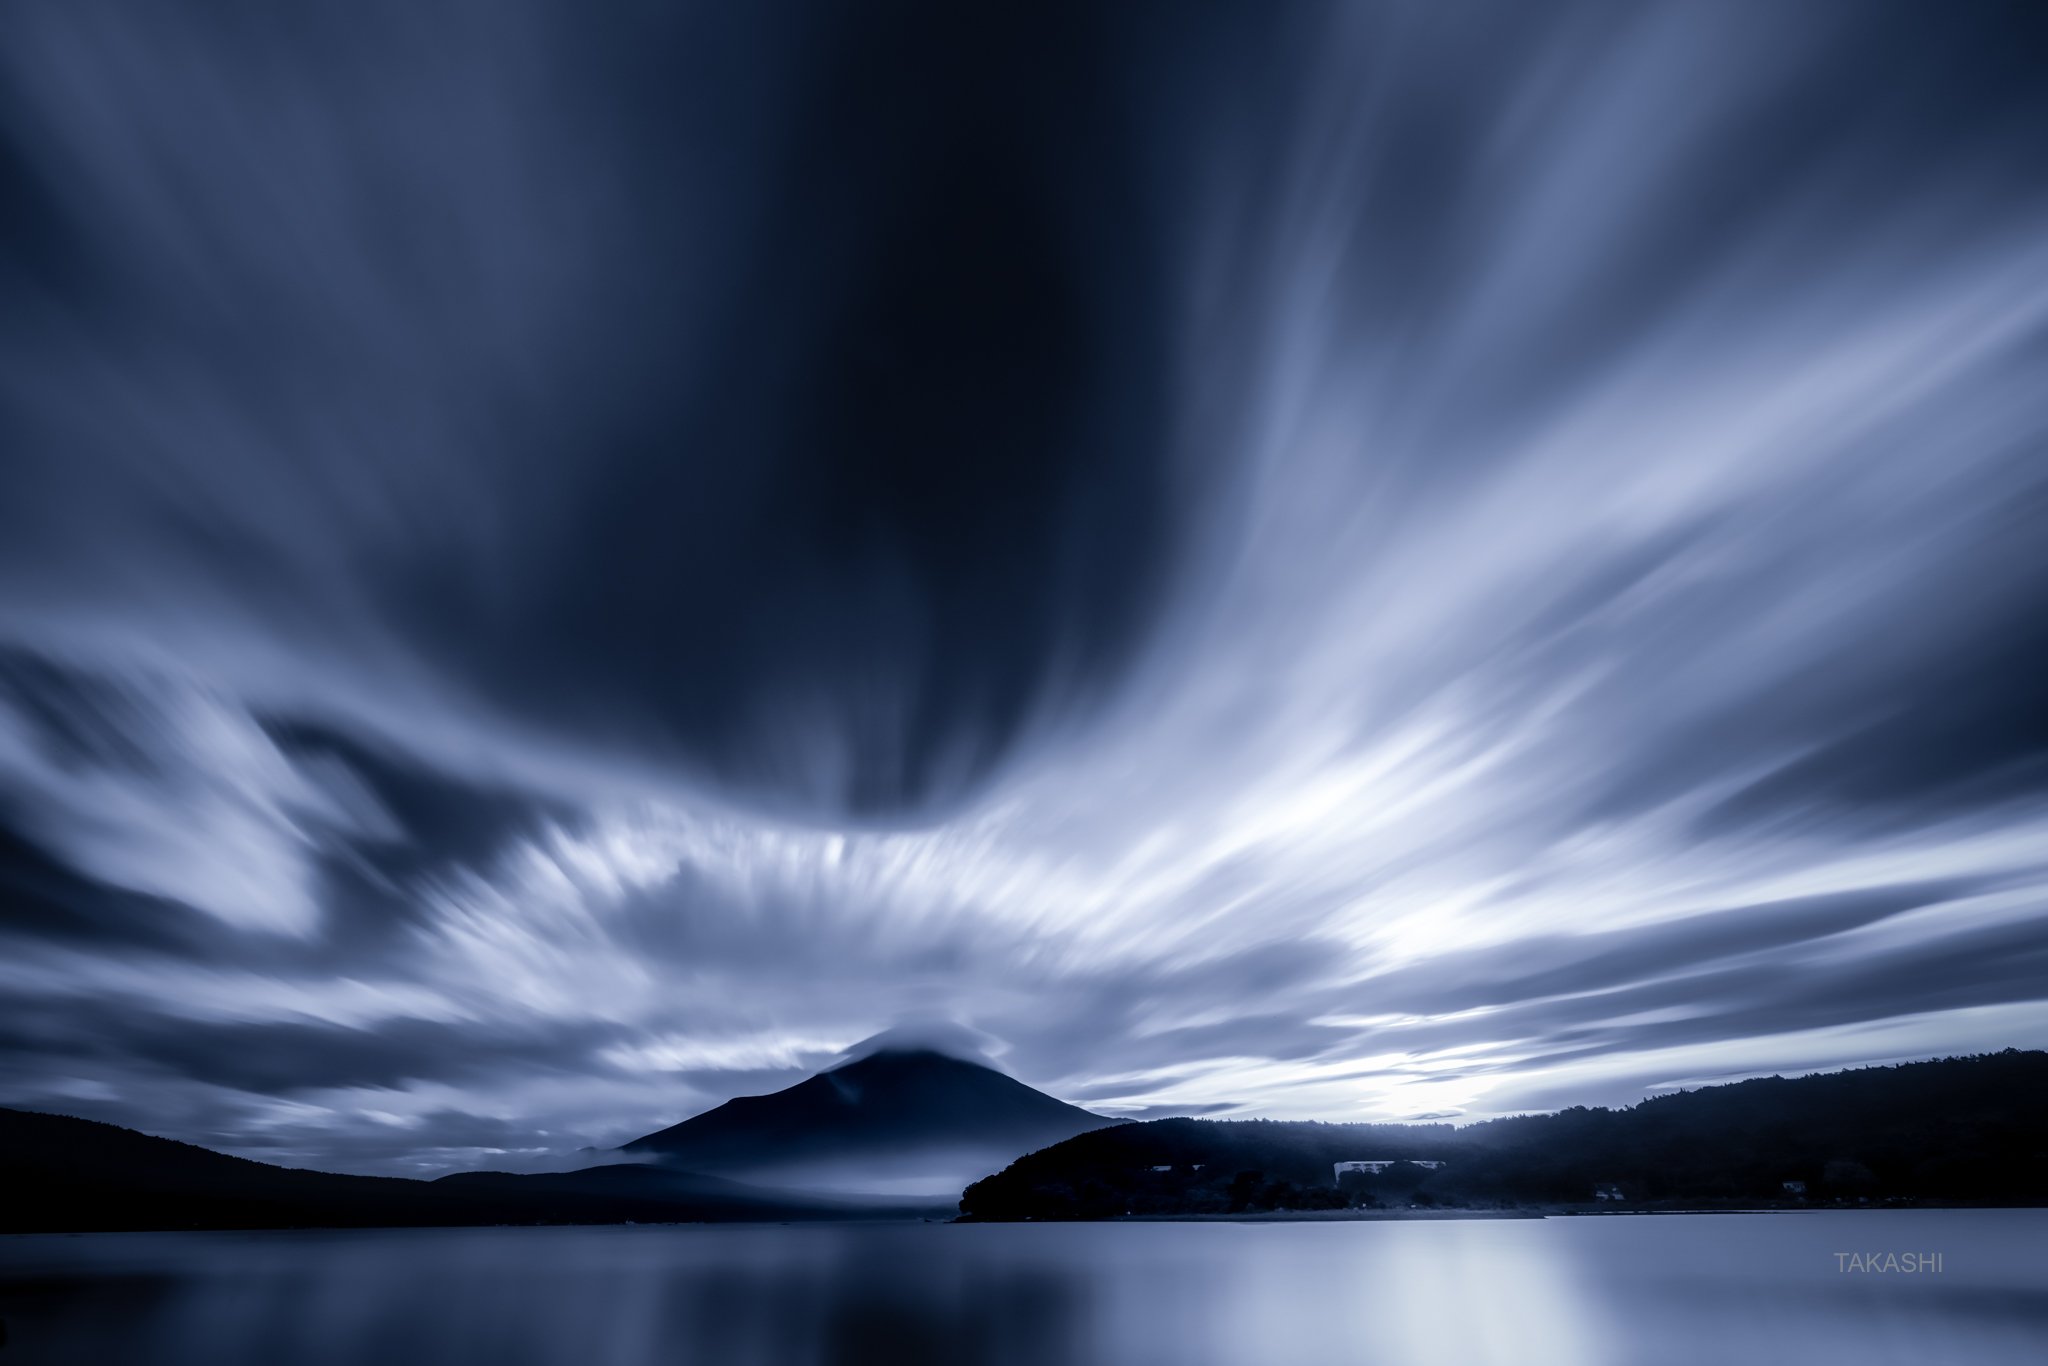 Fuji,Japan,mountain,lake,water,clouds,explotion,burst, Takashi